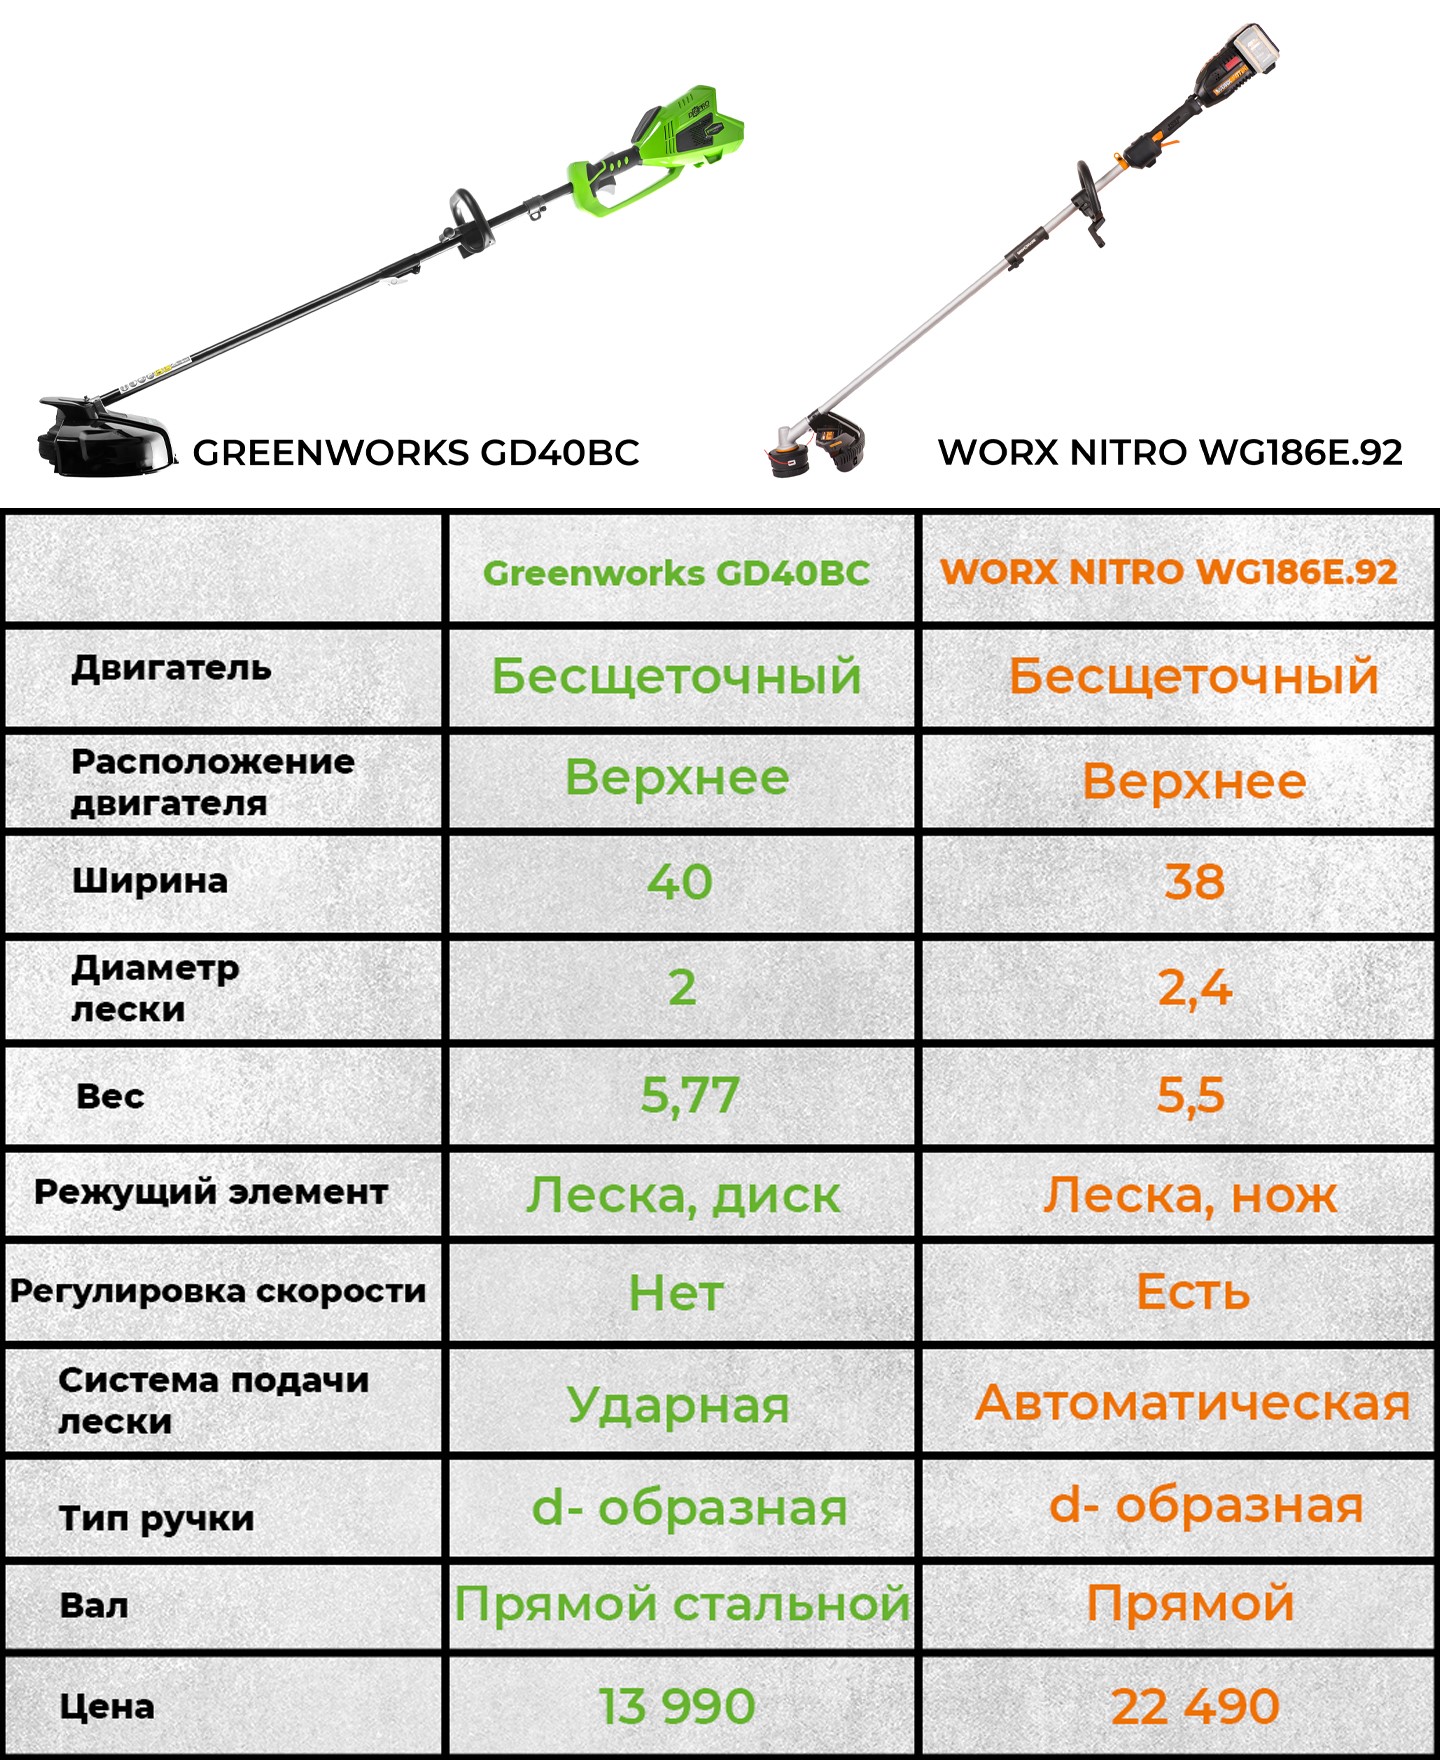 Сравнение триммеров Worx и Greenworks